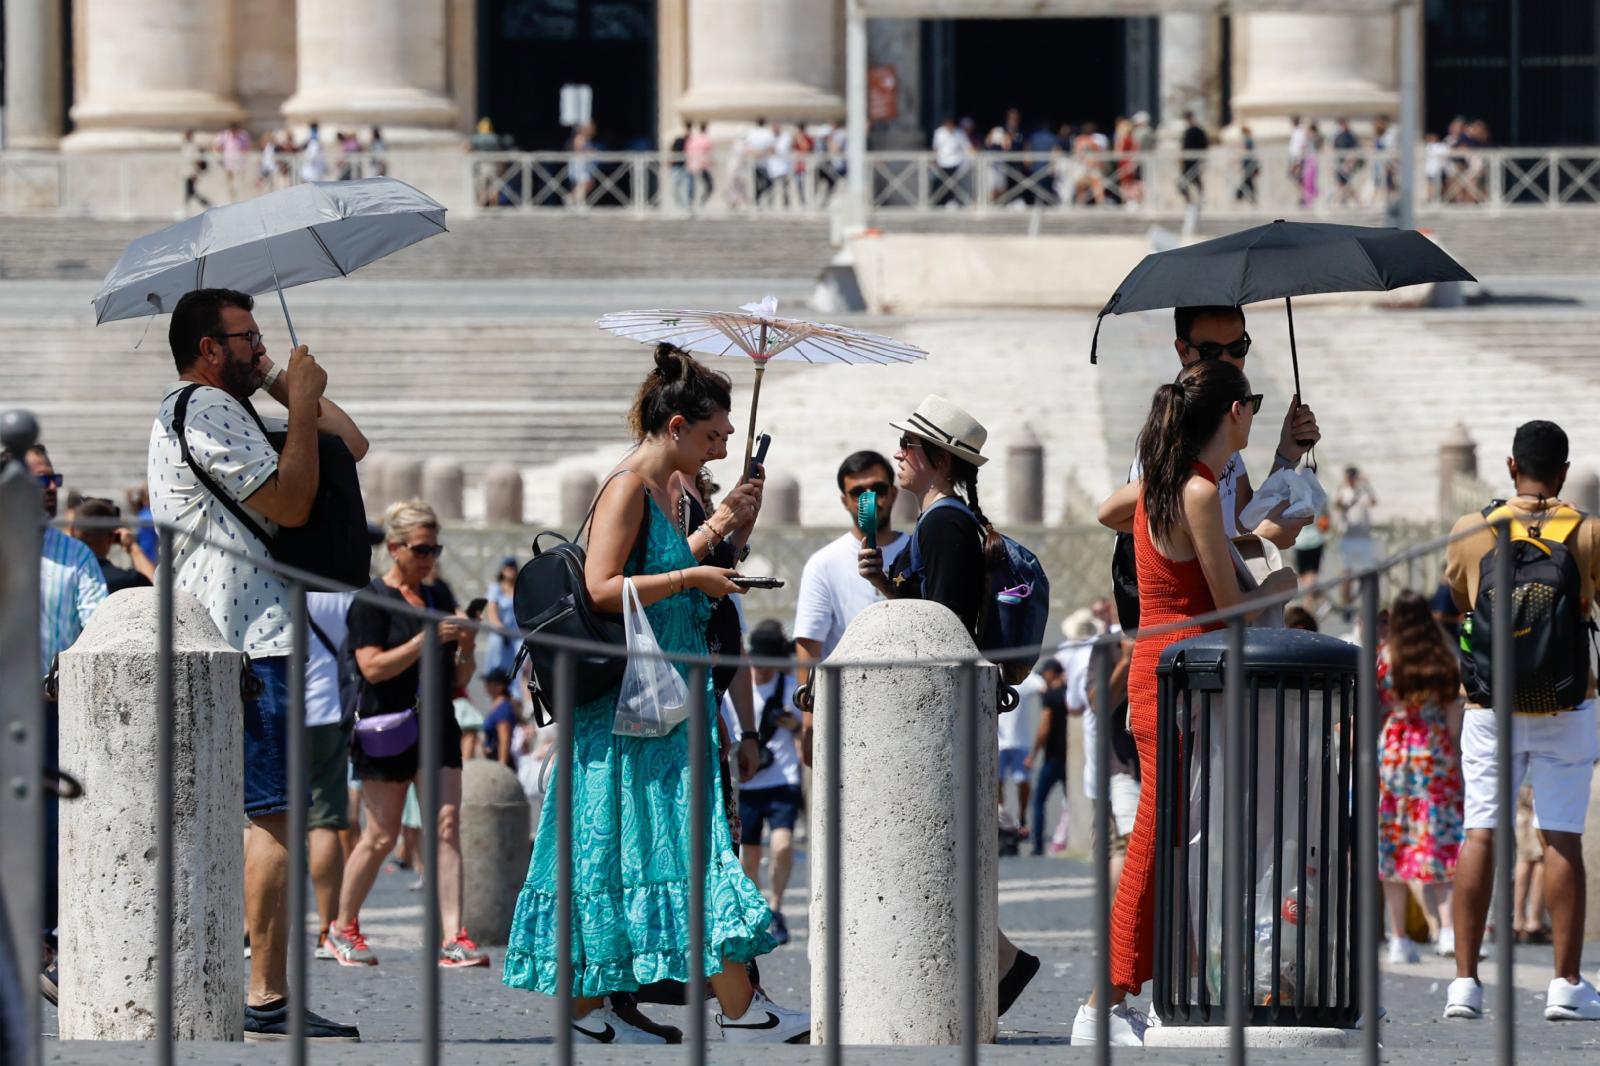 Using umbrellas for shade